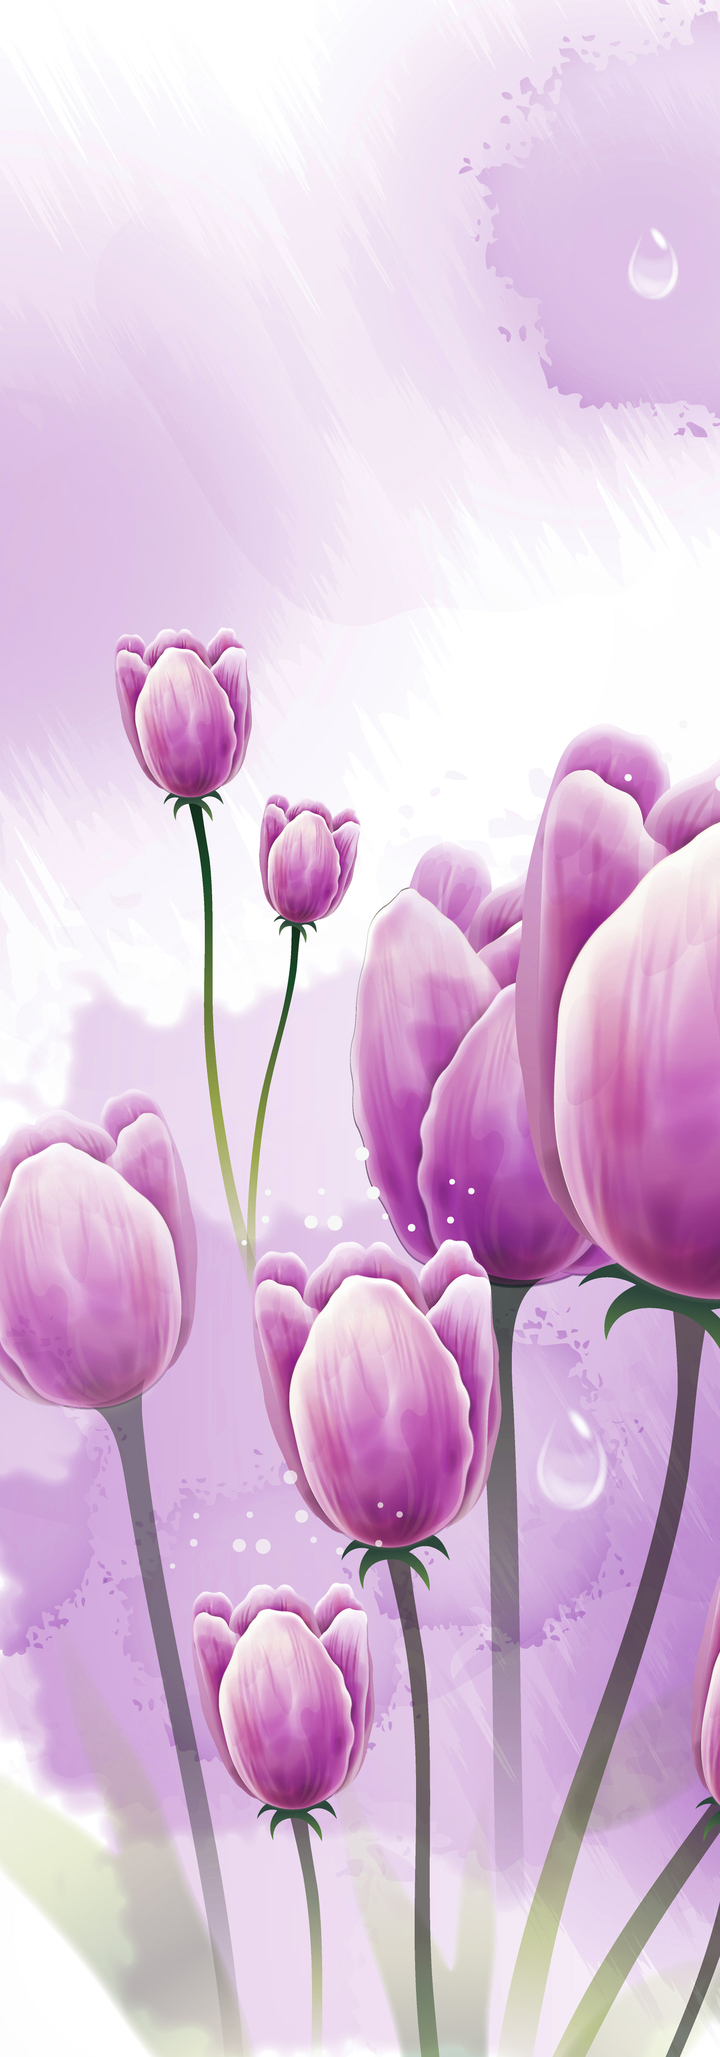 Tranh trang trí chiều dọc bông hoa tulip tím sang trọng 12484 ...